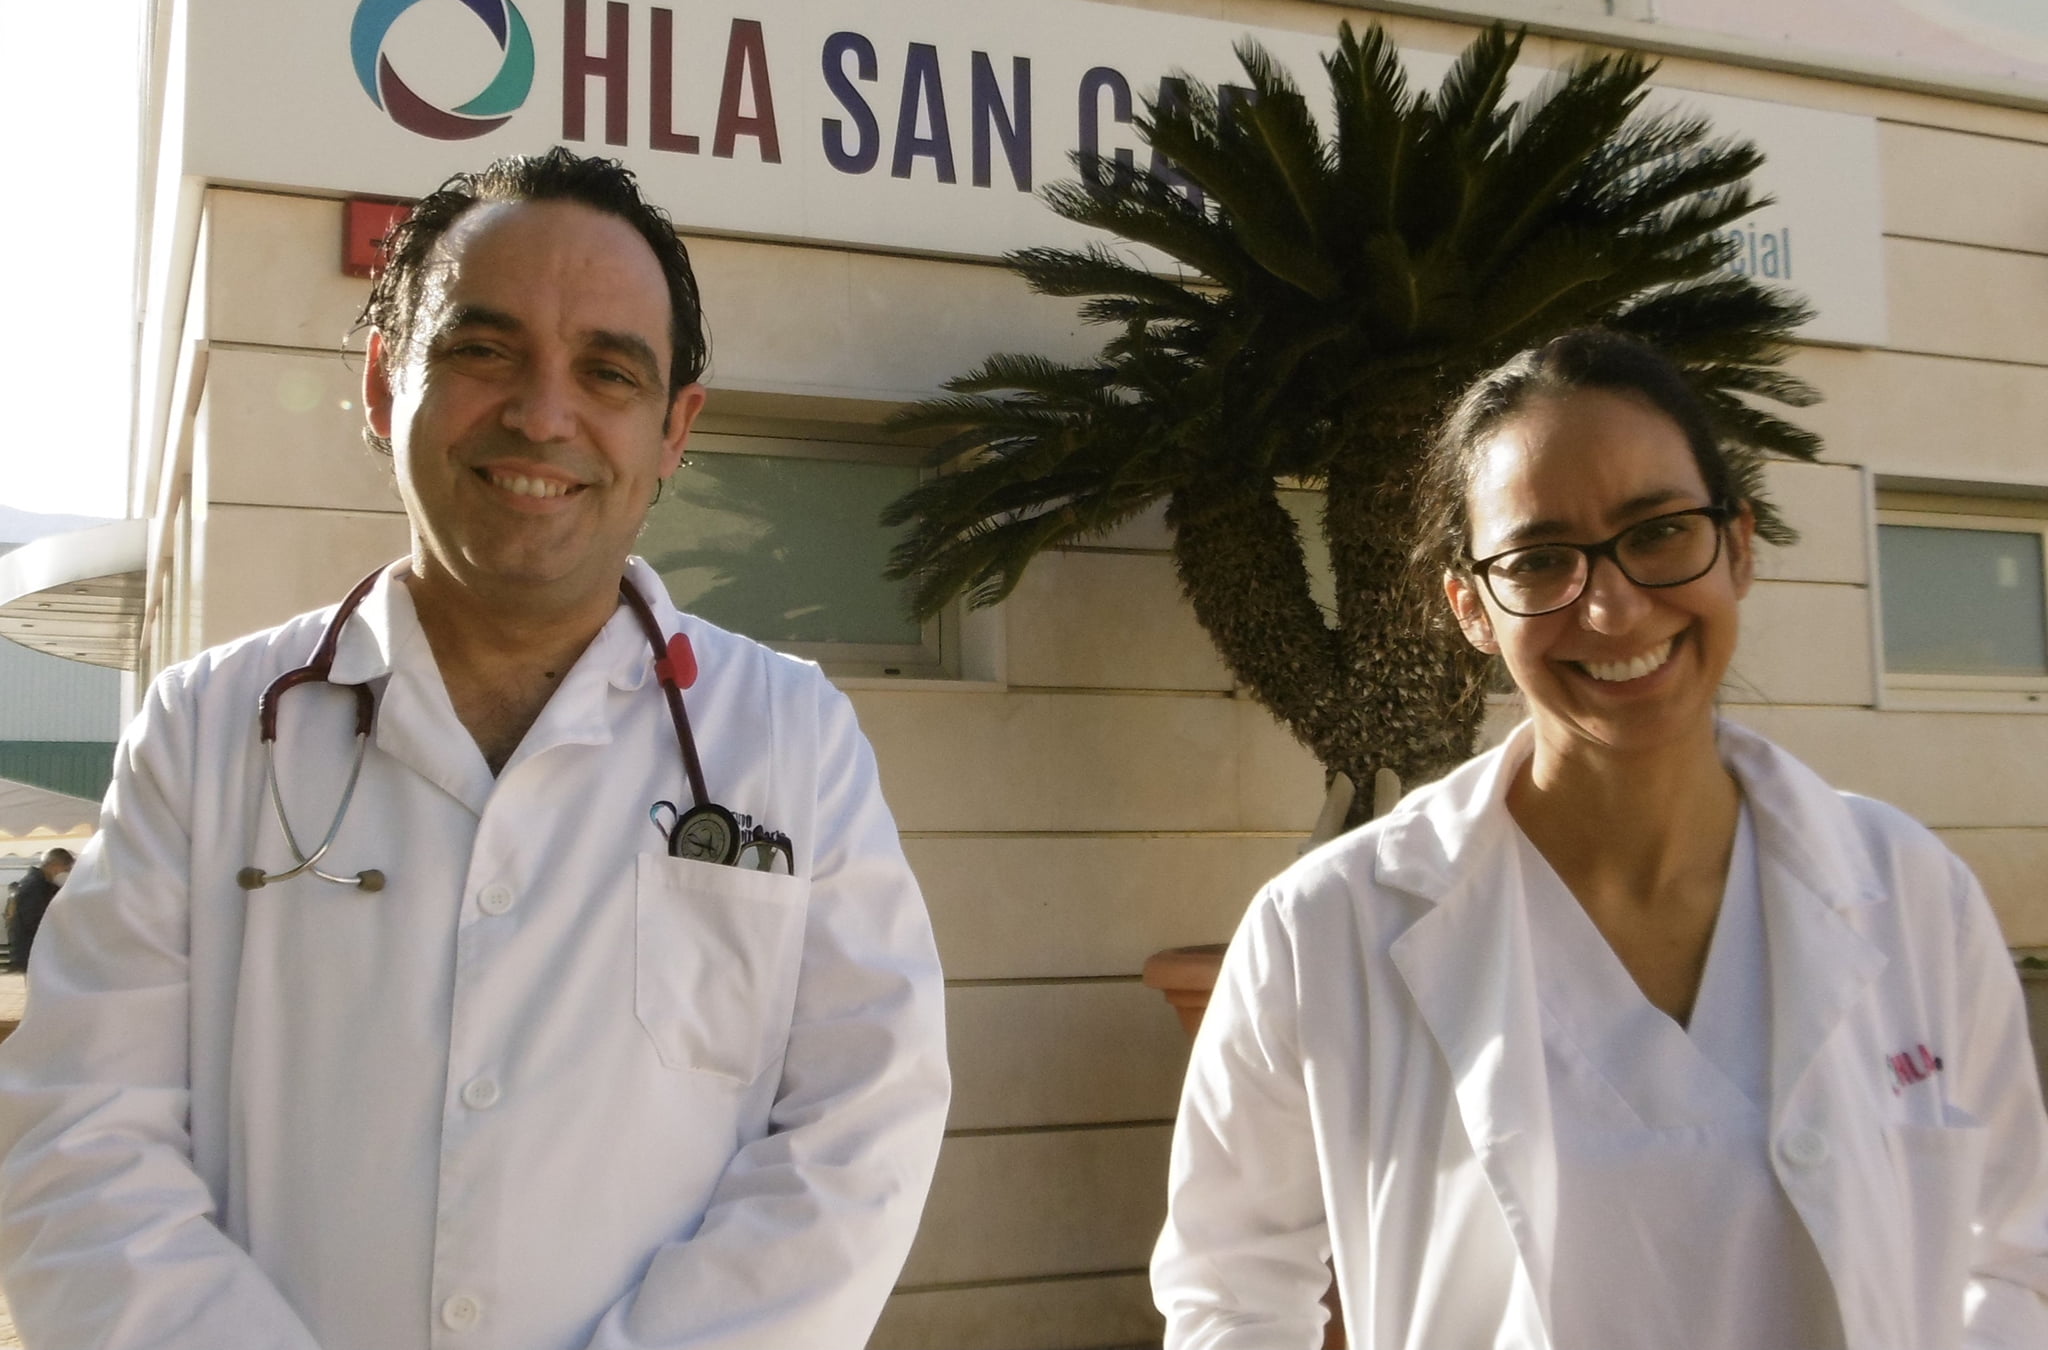 Dr. Vanyo y Dra. Abataneo. Nuevos especialistas internistas del hospital HLA San Carlos